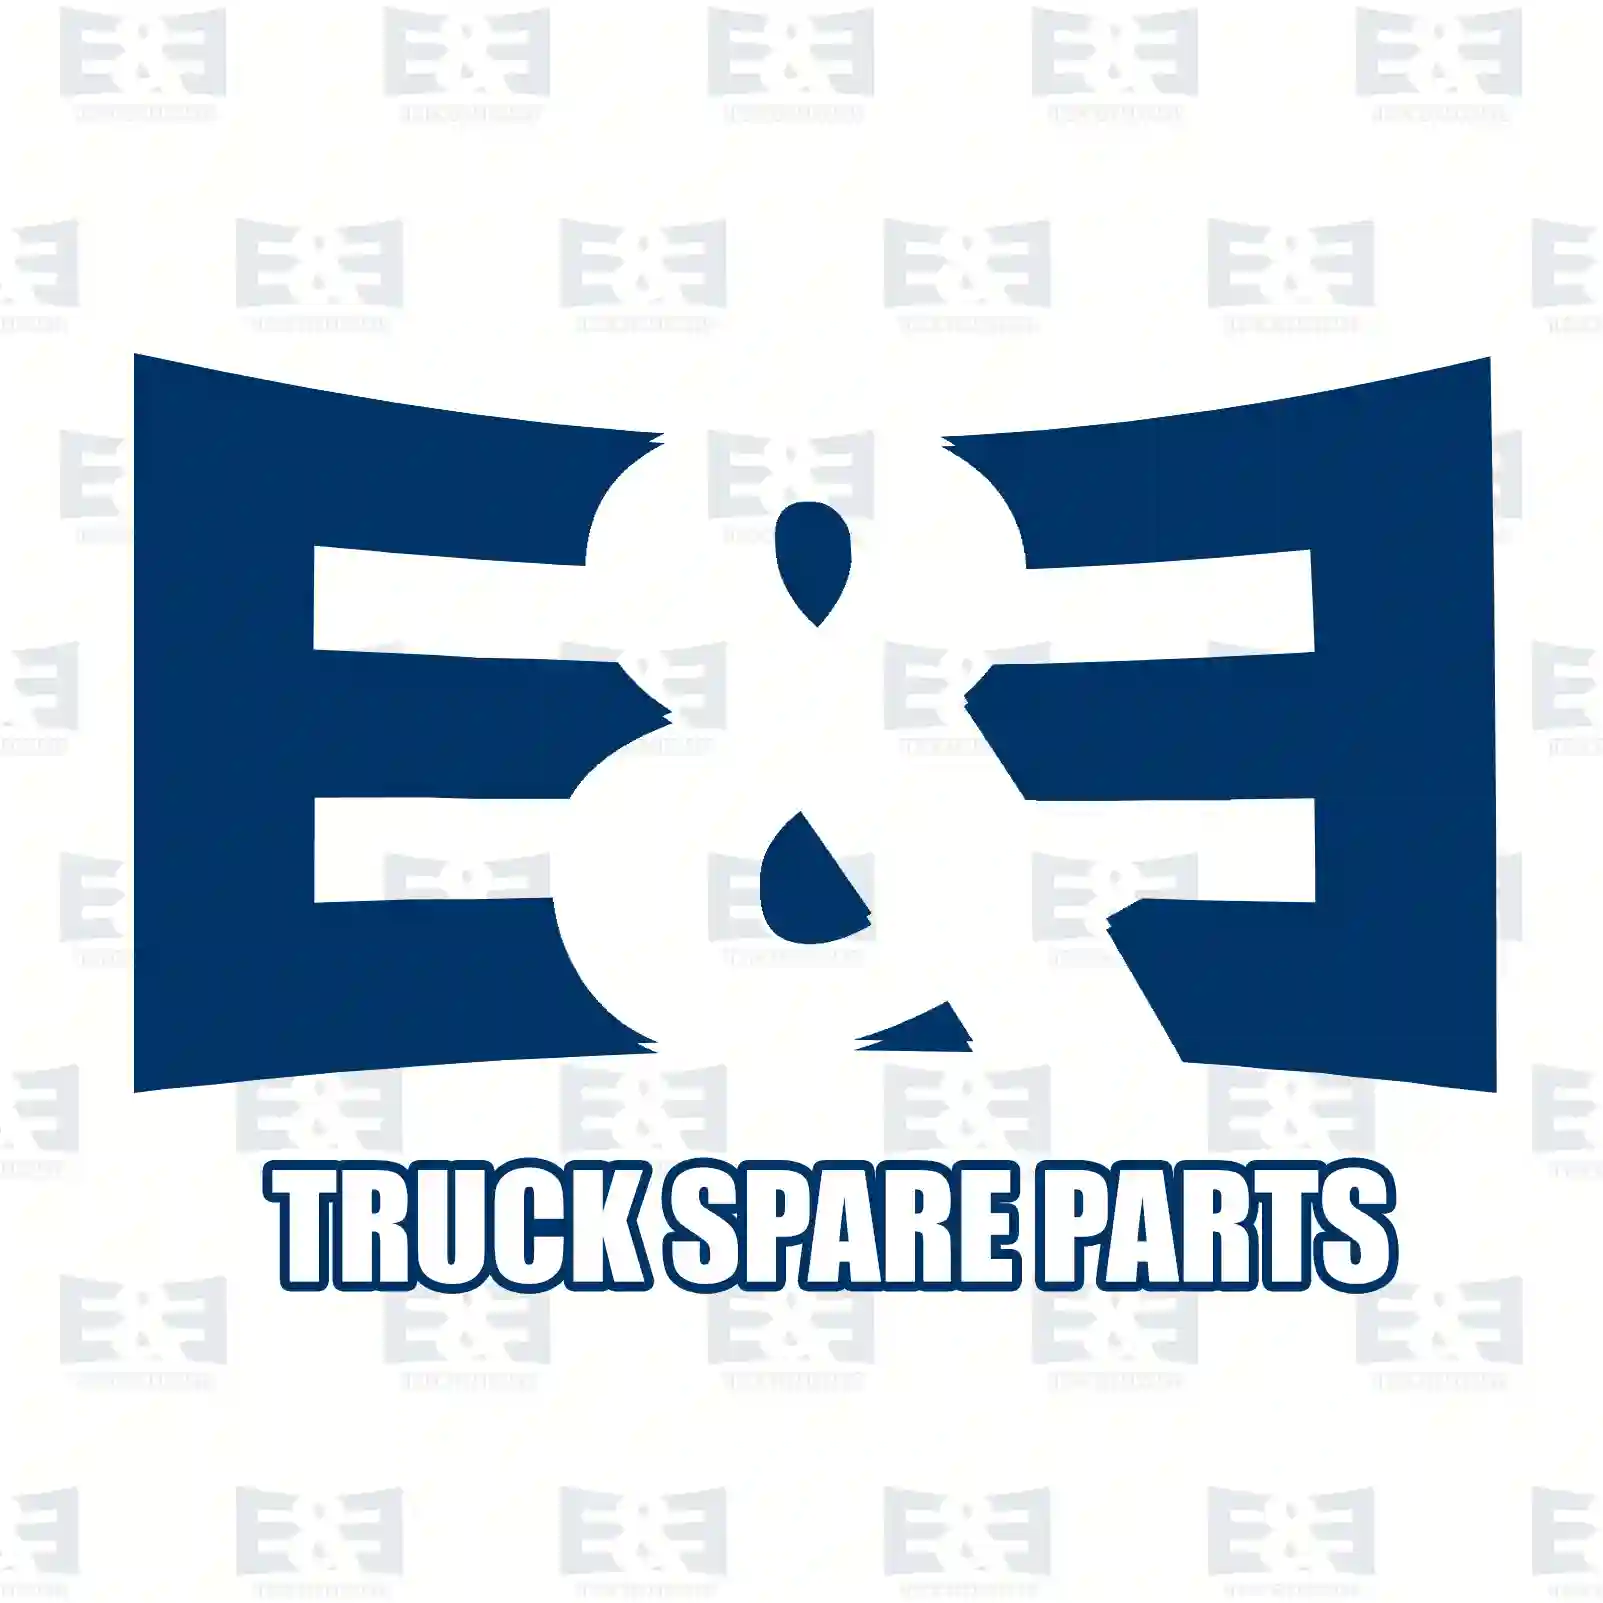 Oil seal, 2E2277936, 08870828, 8870828, , ||  2E2277936 E&E Truck Spare Parts | Truck Spare Parts, Auotomotive Spare Parts Oil seal, 2E2277936, 08870828, 8870828, , ||  2E2277936 E&E Truck Spare Parts | Truck Spare Parts, Auotomotive Spare Parts